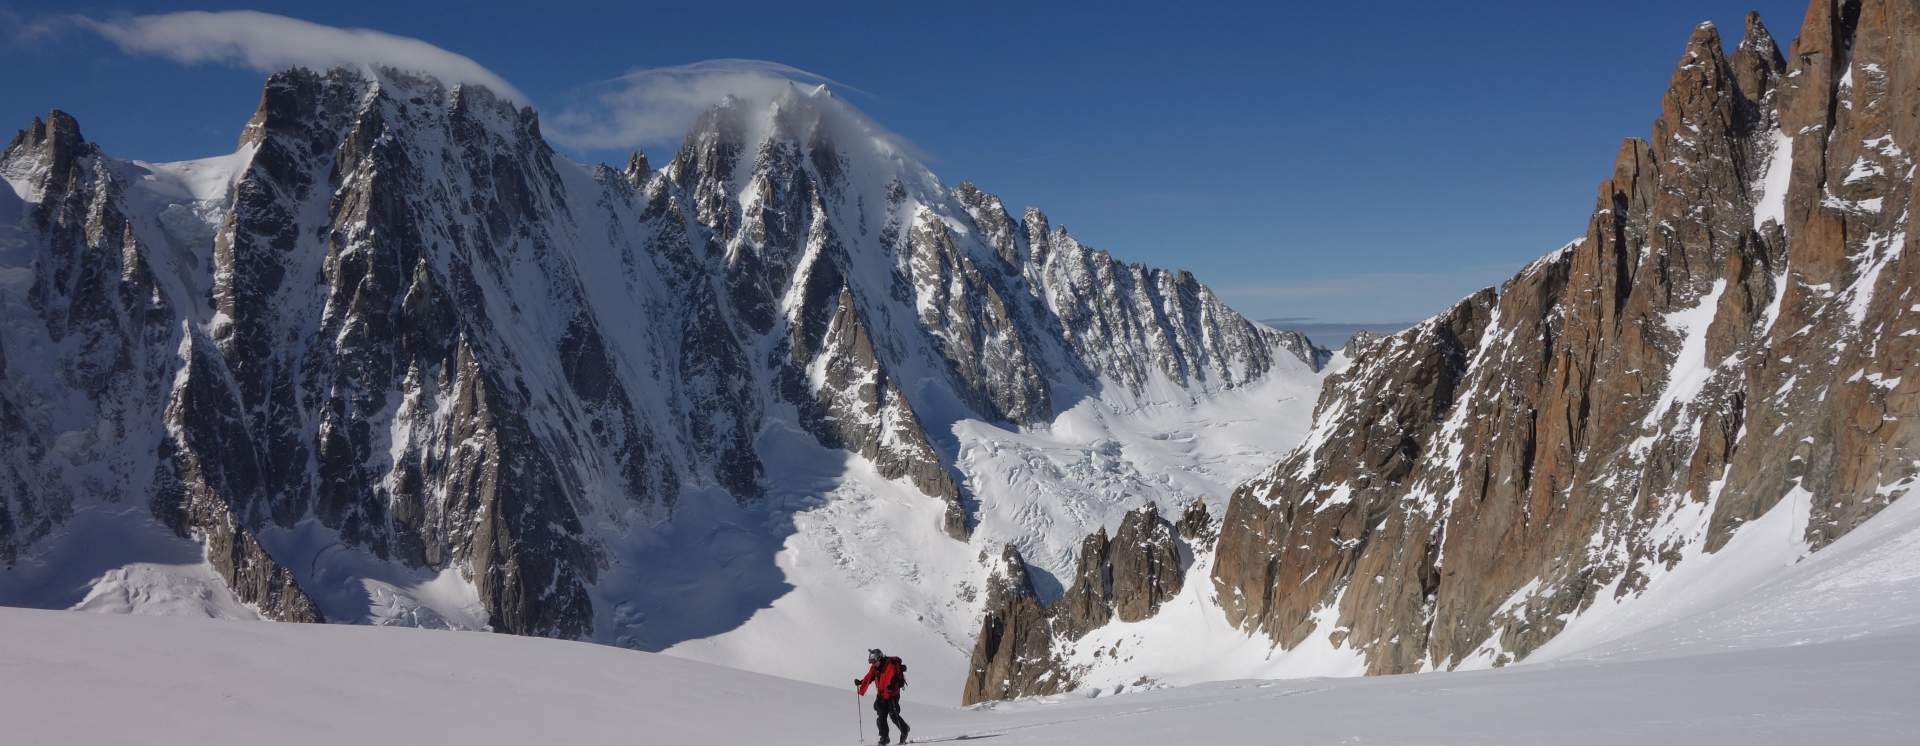 Ski Touring Argentiere Glacier In 3 Days Compagnie Des